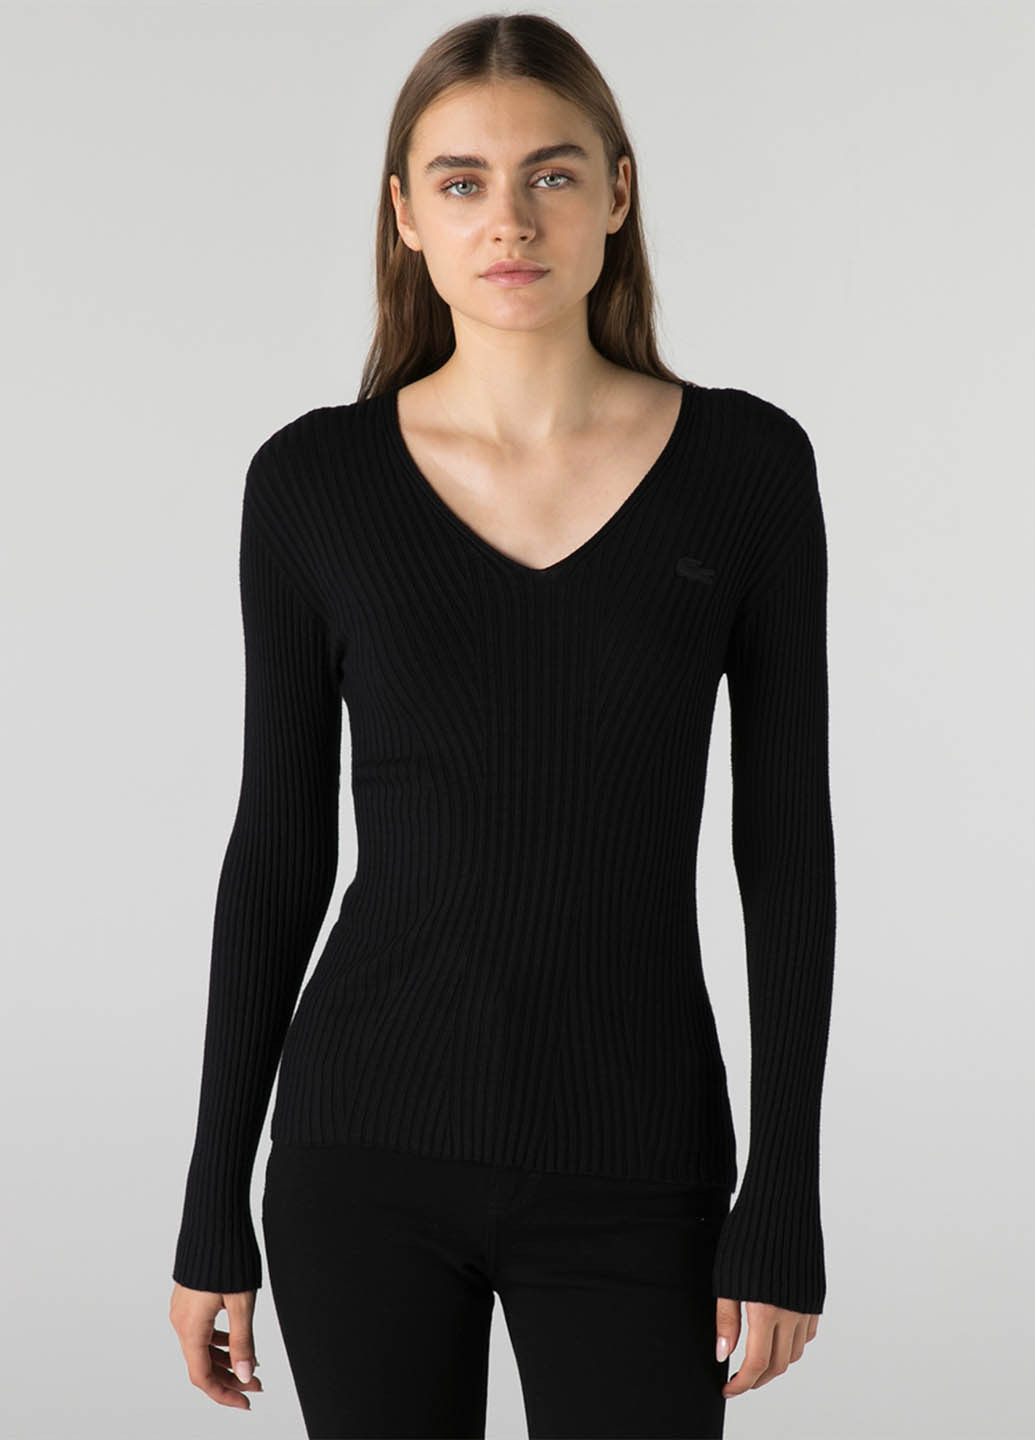 Черный демисезонный пуловер пуловер Lacoste